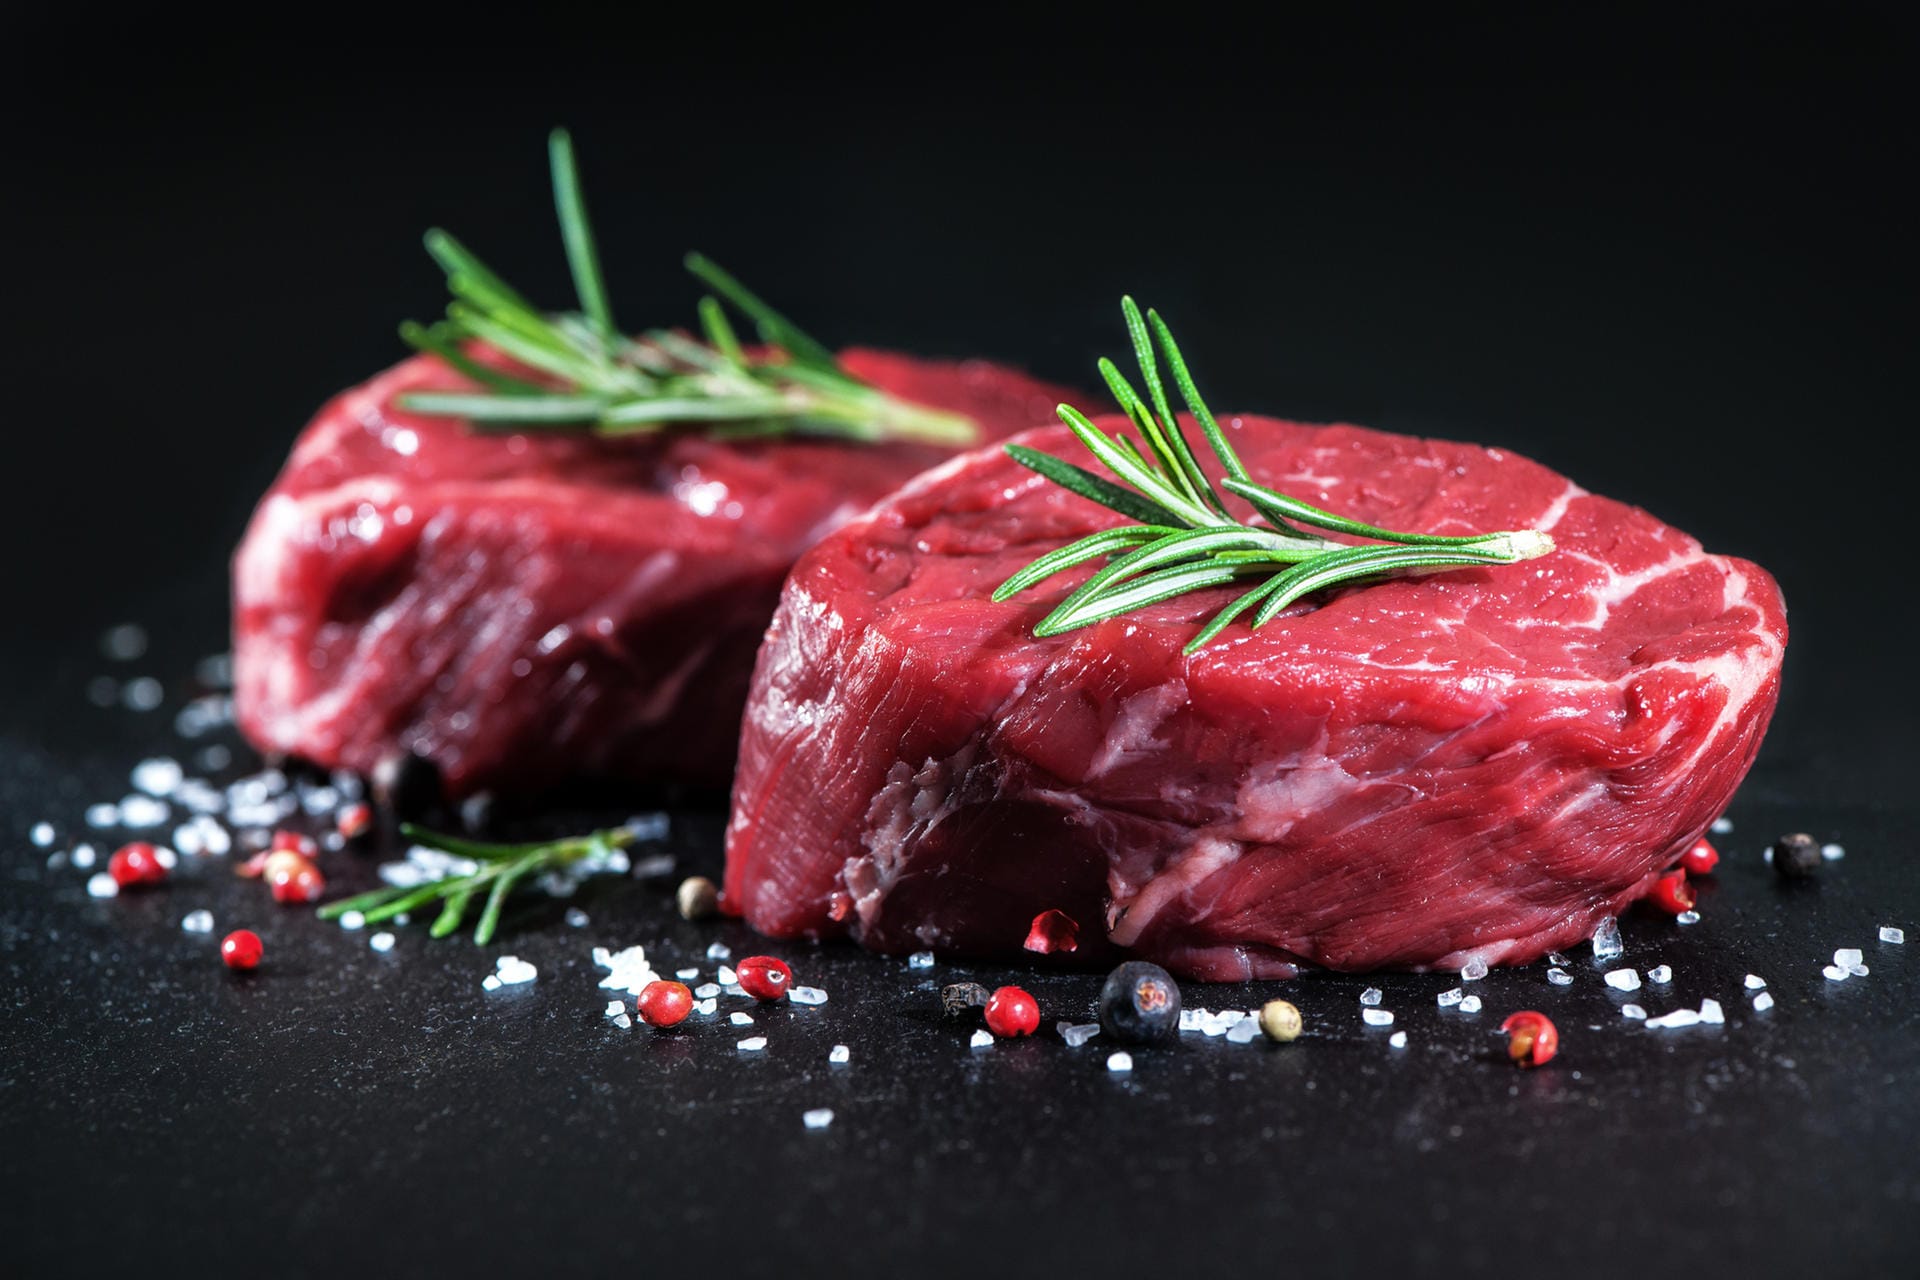 In 100 Gramm Filet vom Rind sind knapp 26 Gramm Eiweiß enthalten. Beef Jerkey – Trockenfleisch vom Rind – ist mit 55 Gramm pro 100 Gramm eine wahre Proteinquelle.